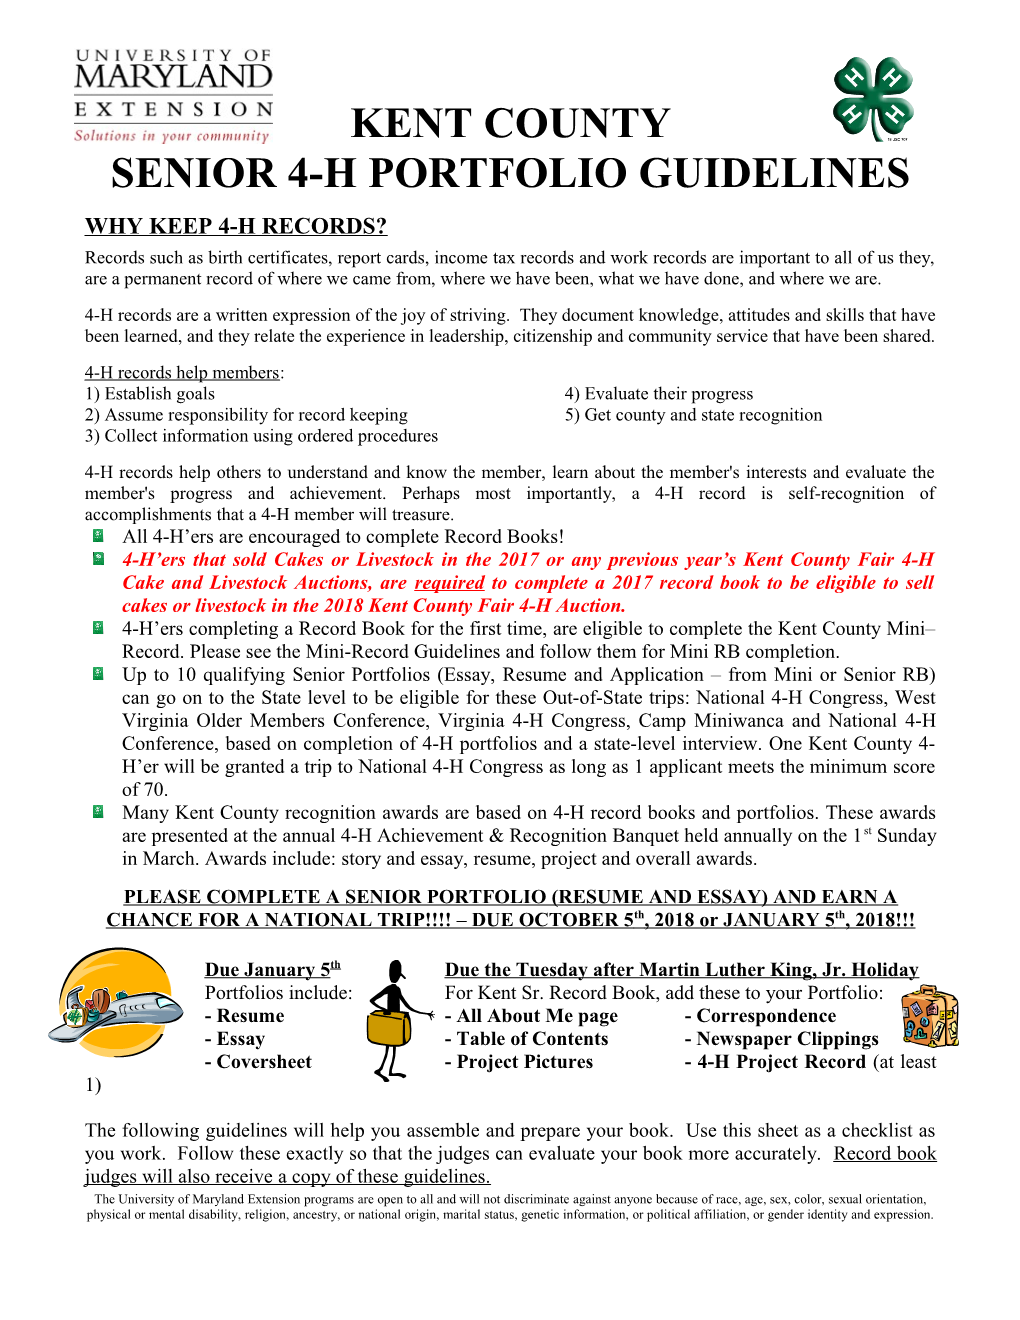 Senior 4-H Portfolio Guidelines